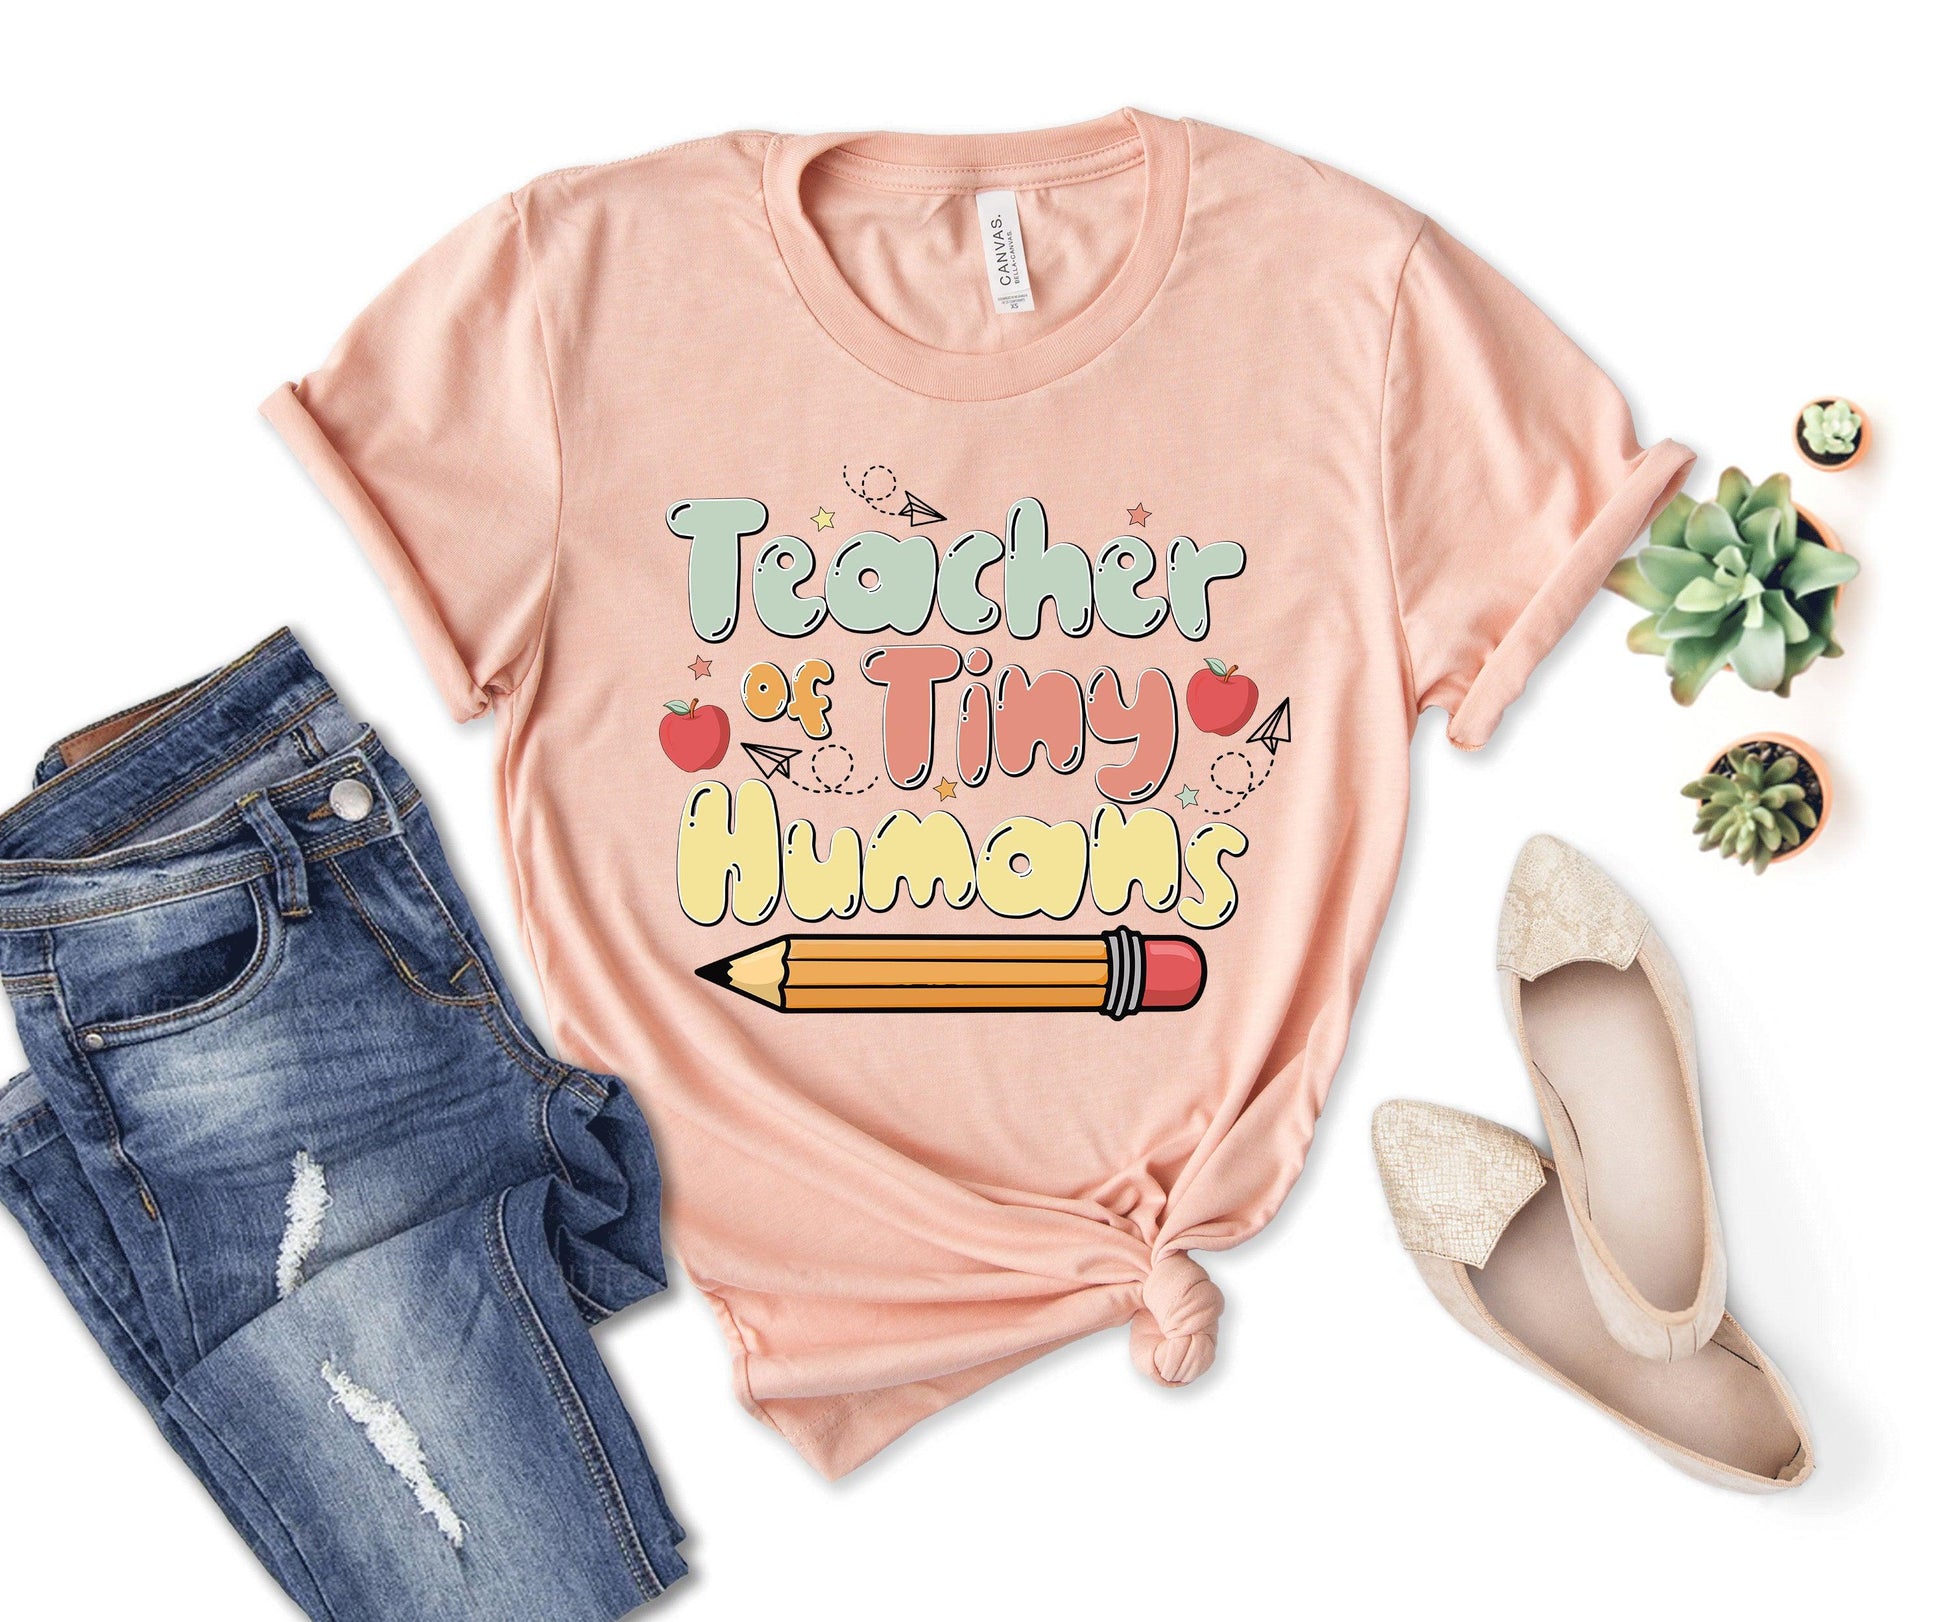 Teacher of Tiny Humans T-Shirt, Tank Top, Toddler T-Shirt, Baby Onesie - newamarketing